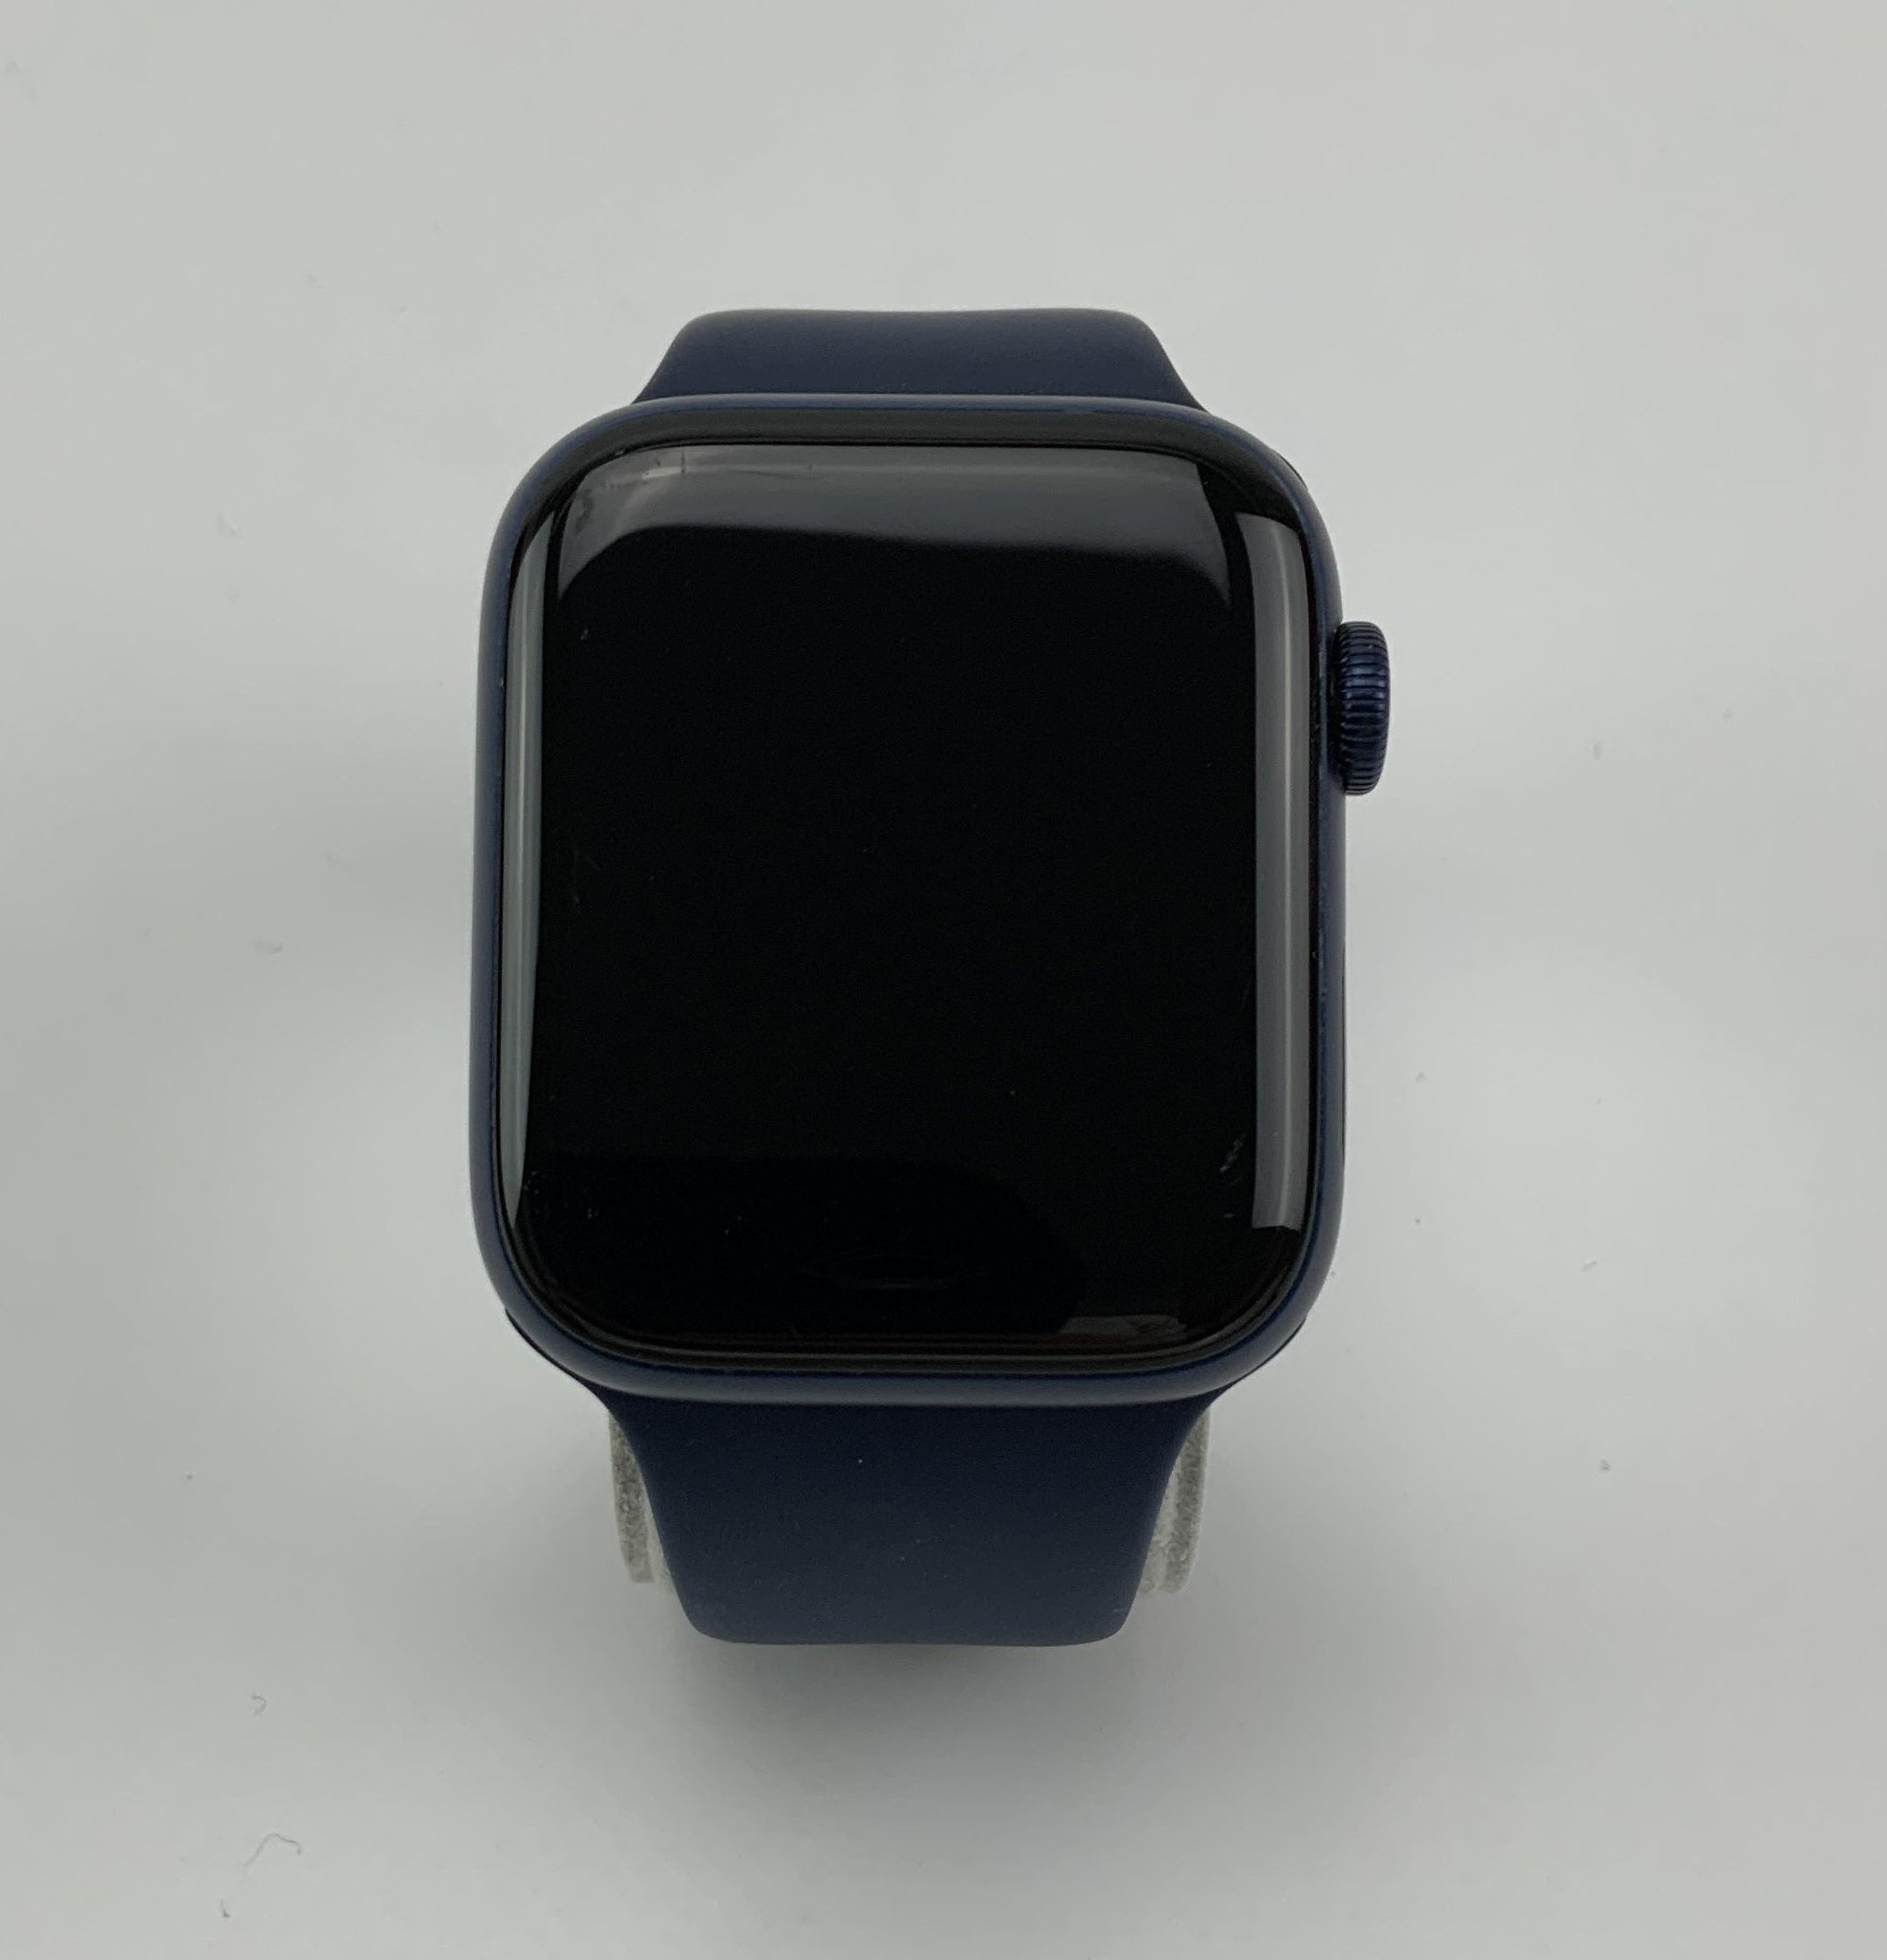 Watch Series 6 Aluminum Cellular (44mm), Blue, imagen 1